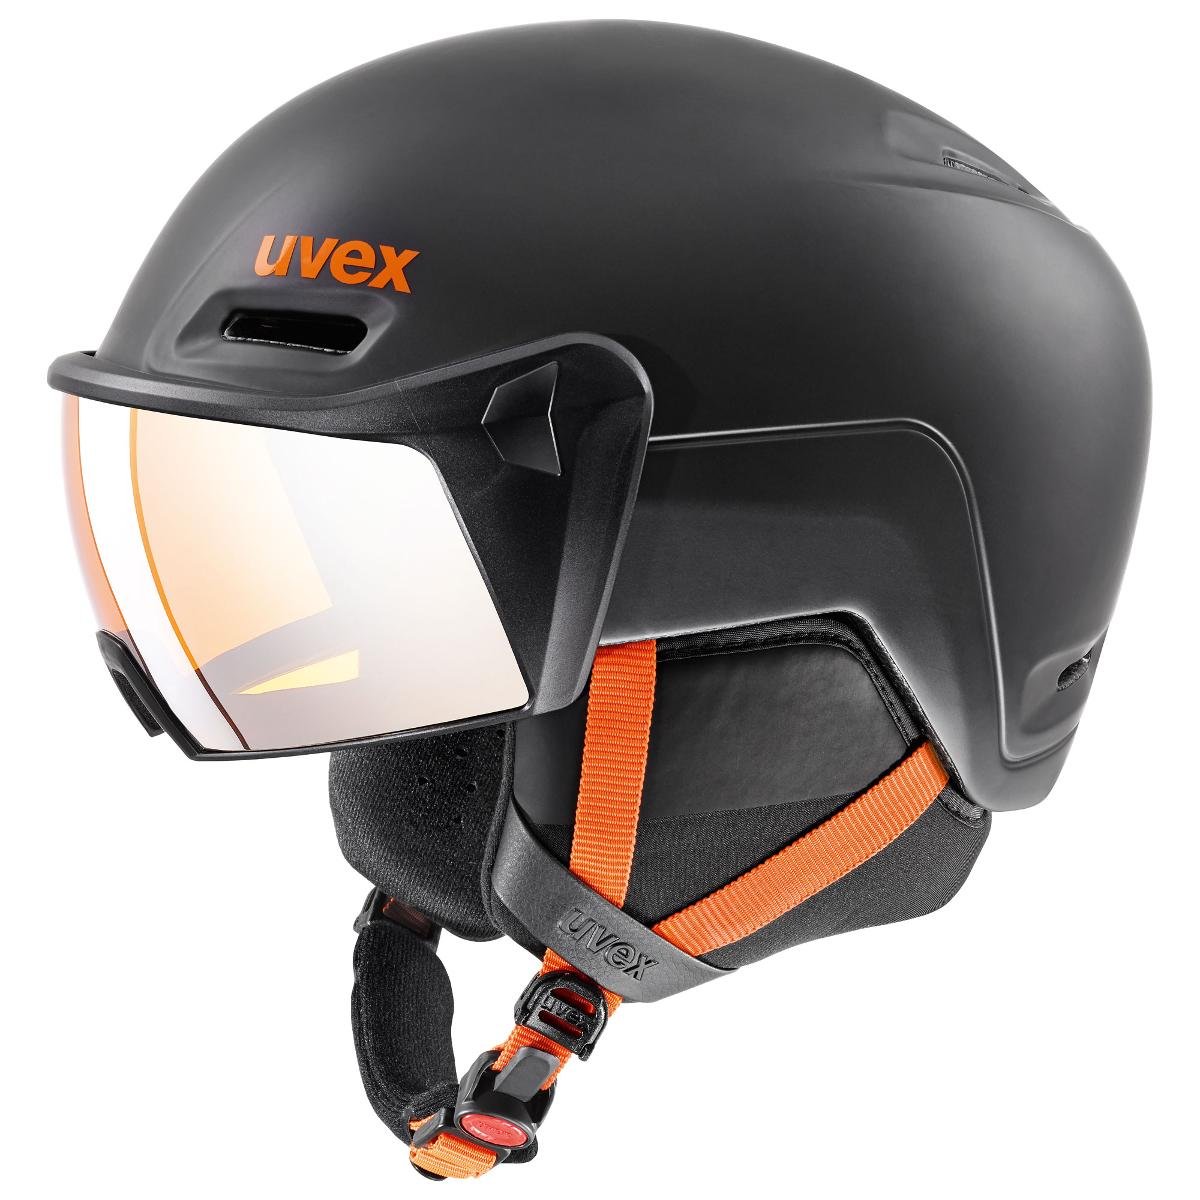 Uvex hlmt 700 Visor Kask, dark slate orange mat 59-61cm 2020 Kaski narciarskie S5662376007